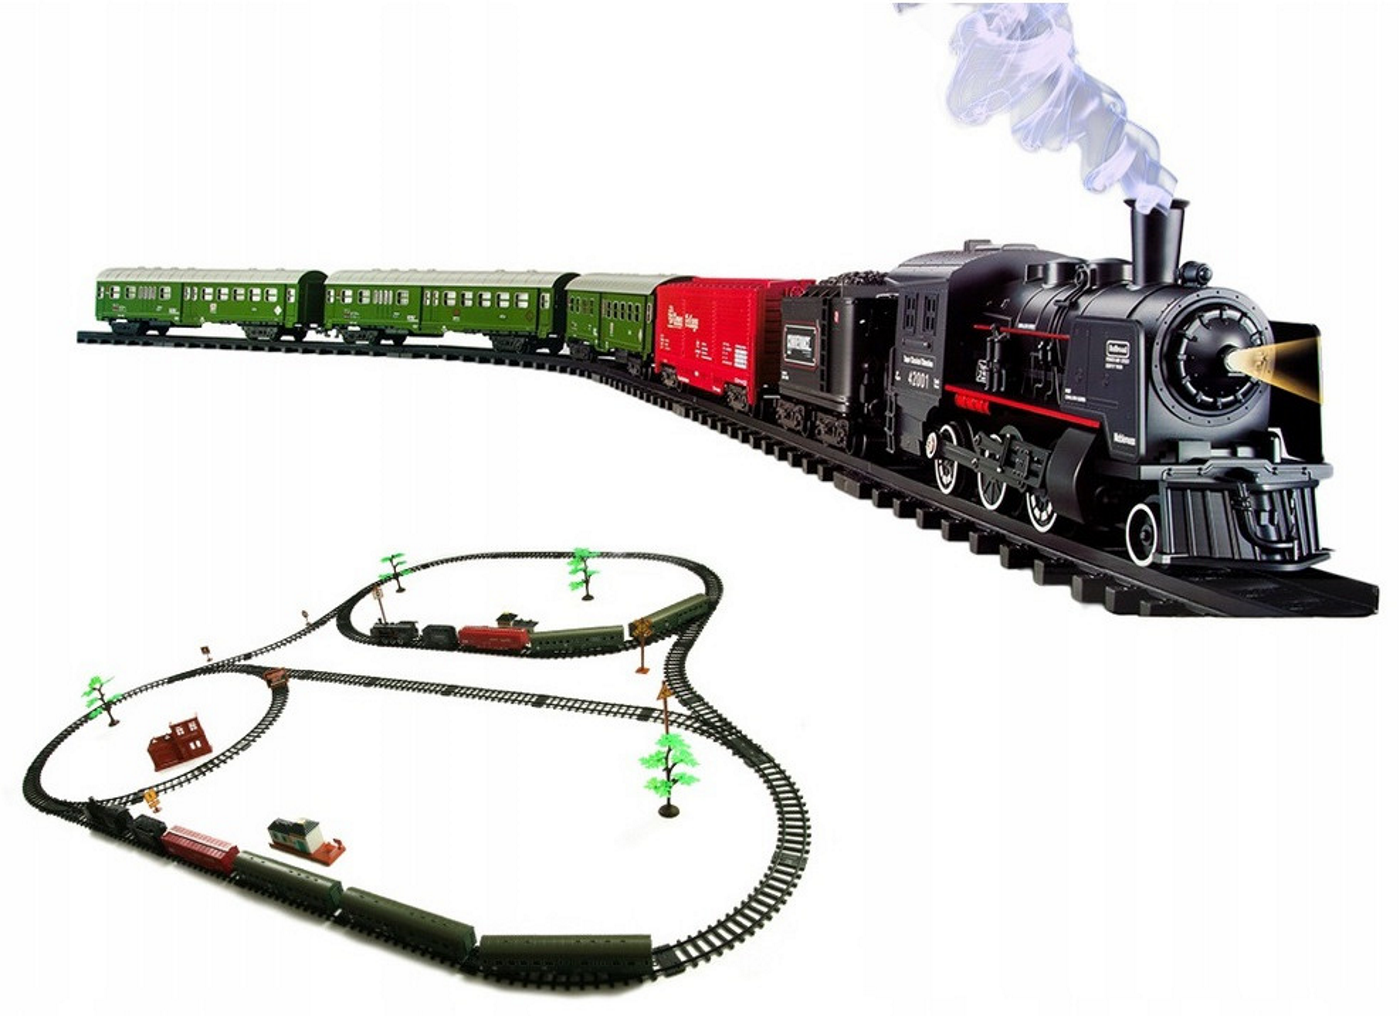 Circuit electric cu tren idealSTORE Rail Classic Train, Include locomotive, vagoane, elemente de trasee si indicatoare feroviare, Accesorizat cu lumini, sunete si abur, Dezvolta imaginatia, abilitatile manuale si coordonarea